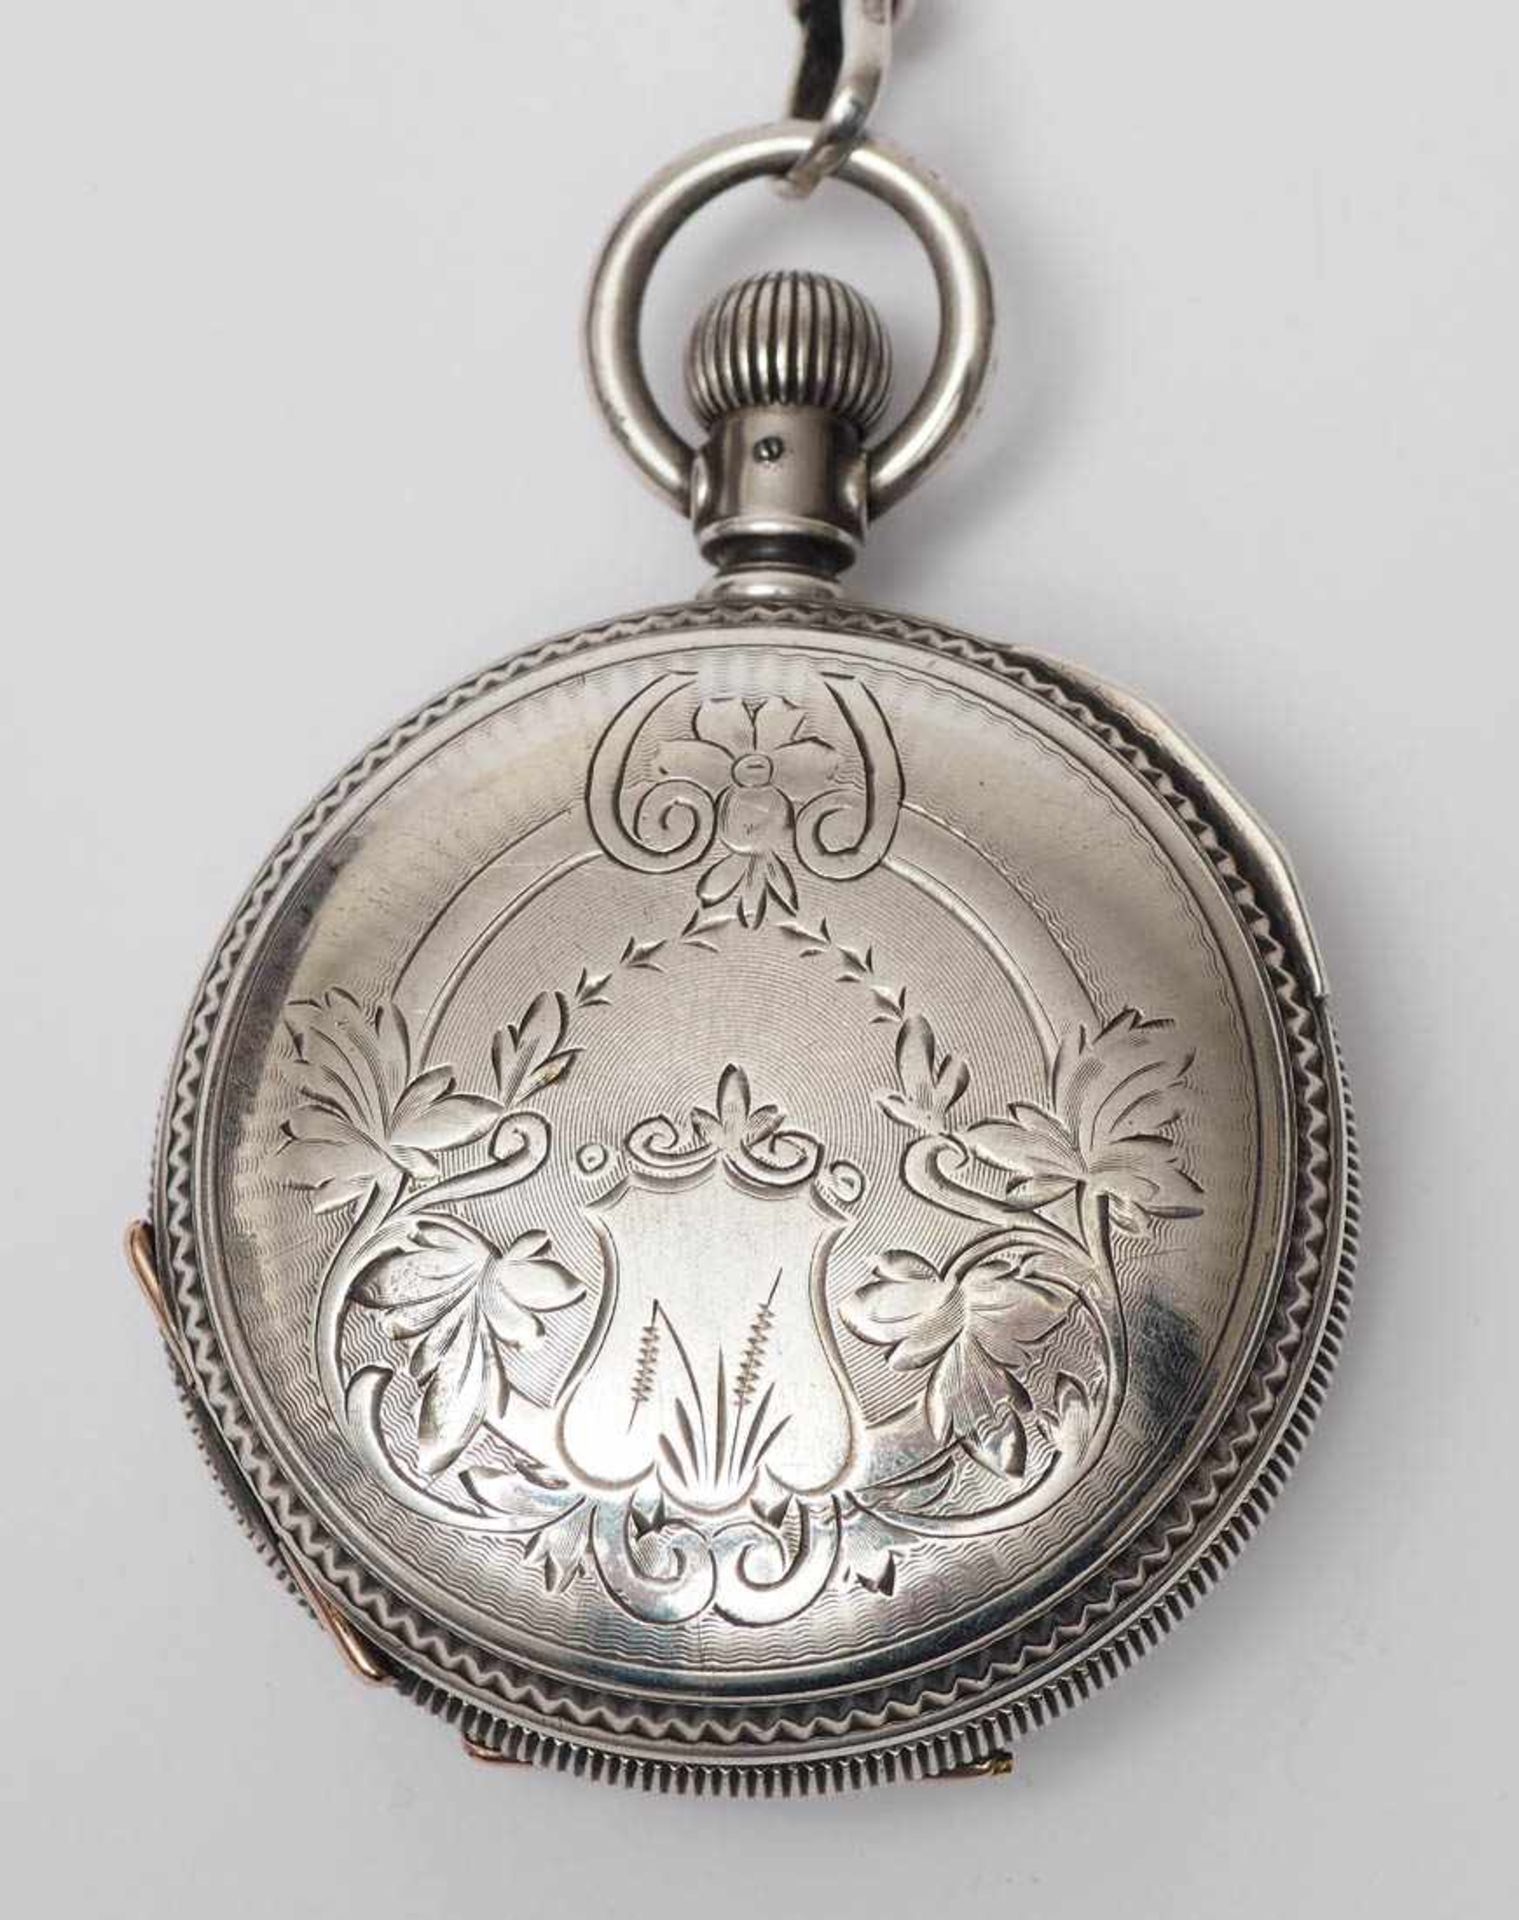 Herrentaschenuhr, Waltham, 19.Jhdt. Silbernes Savonettegehäuse, bez. "Coin silver", mit